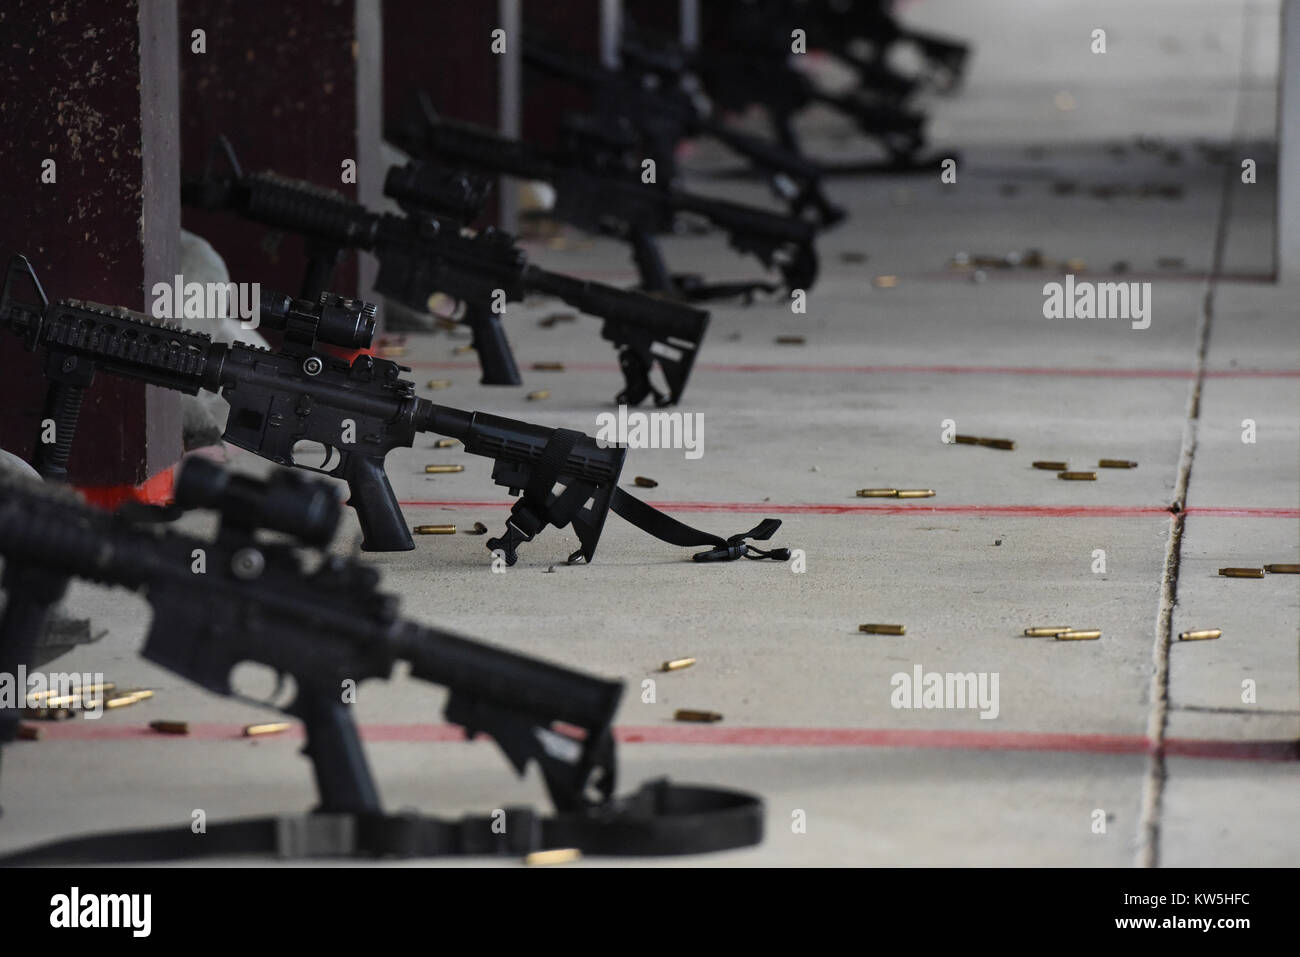 Neuf fusils carabine M4 stand dans une rangée entre tirant des coups à la formation des armes de combat et centre d'entretien du 16 novembre 2017, de Incirlik Air Base, Banque D'Images